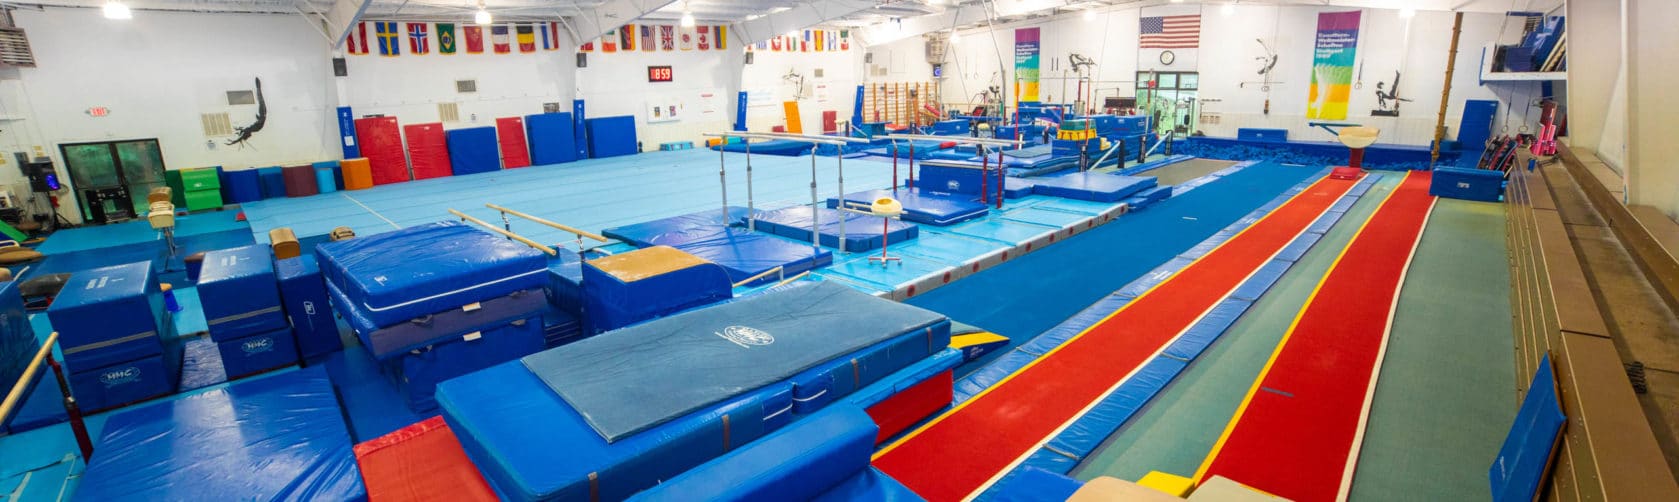 Gymnasium with mats